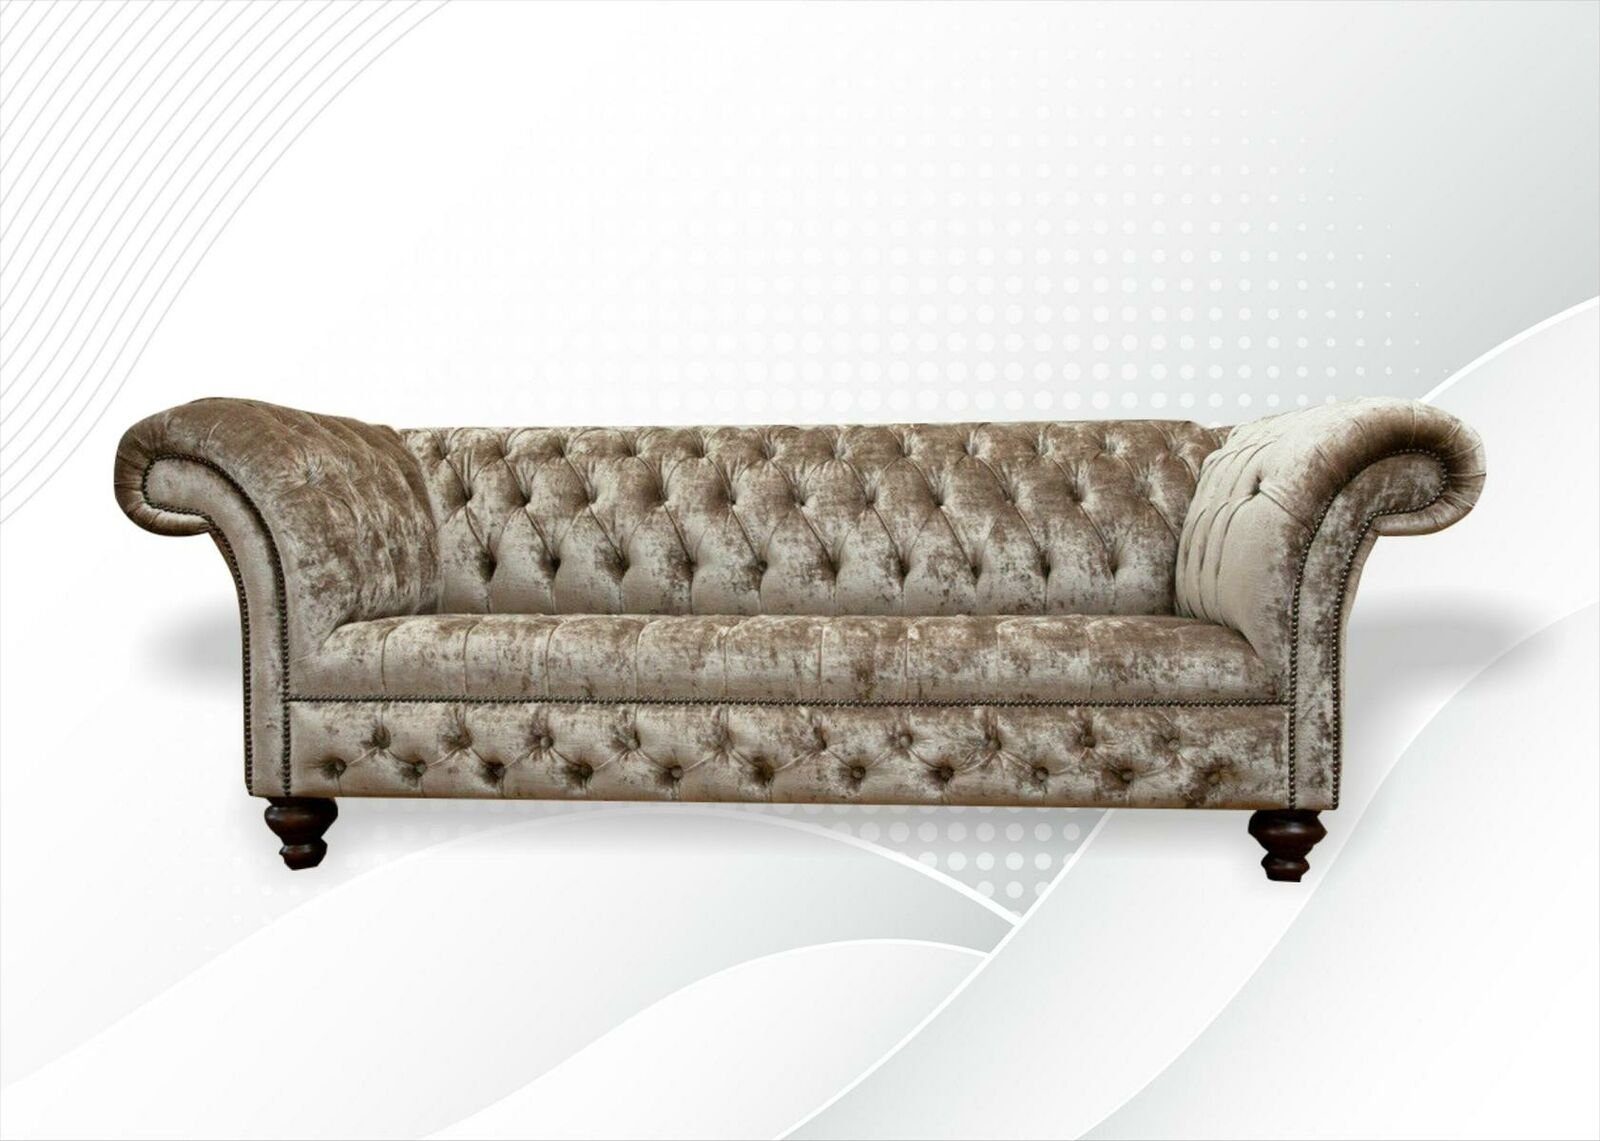 Neu, Europe Chesterfield-Sofa 3-Sitzer Möbel luxus Farbe Made in Chesterfield JVmoebel Modern Nerz 3-er